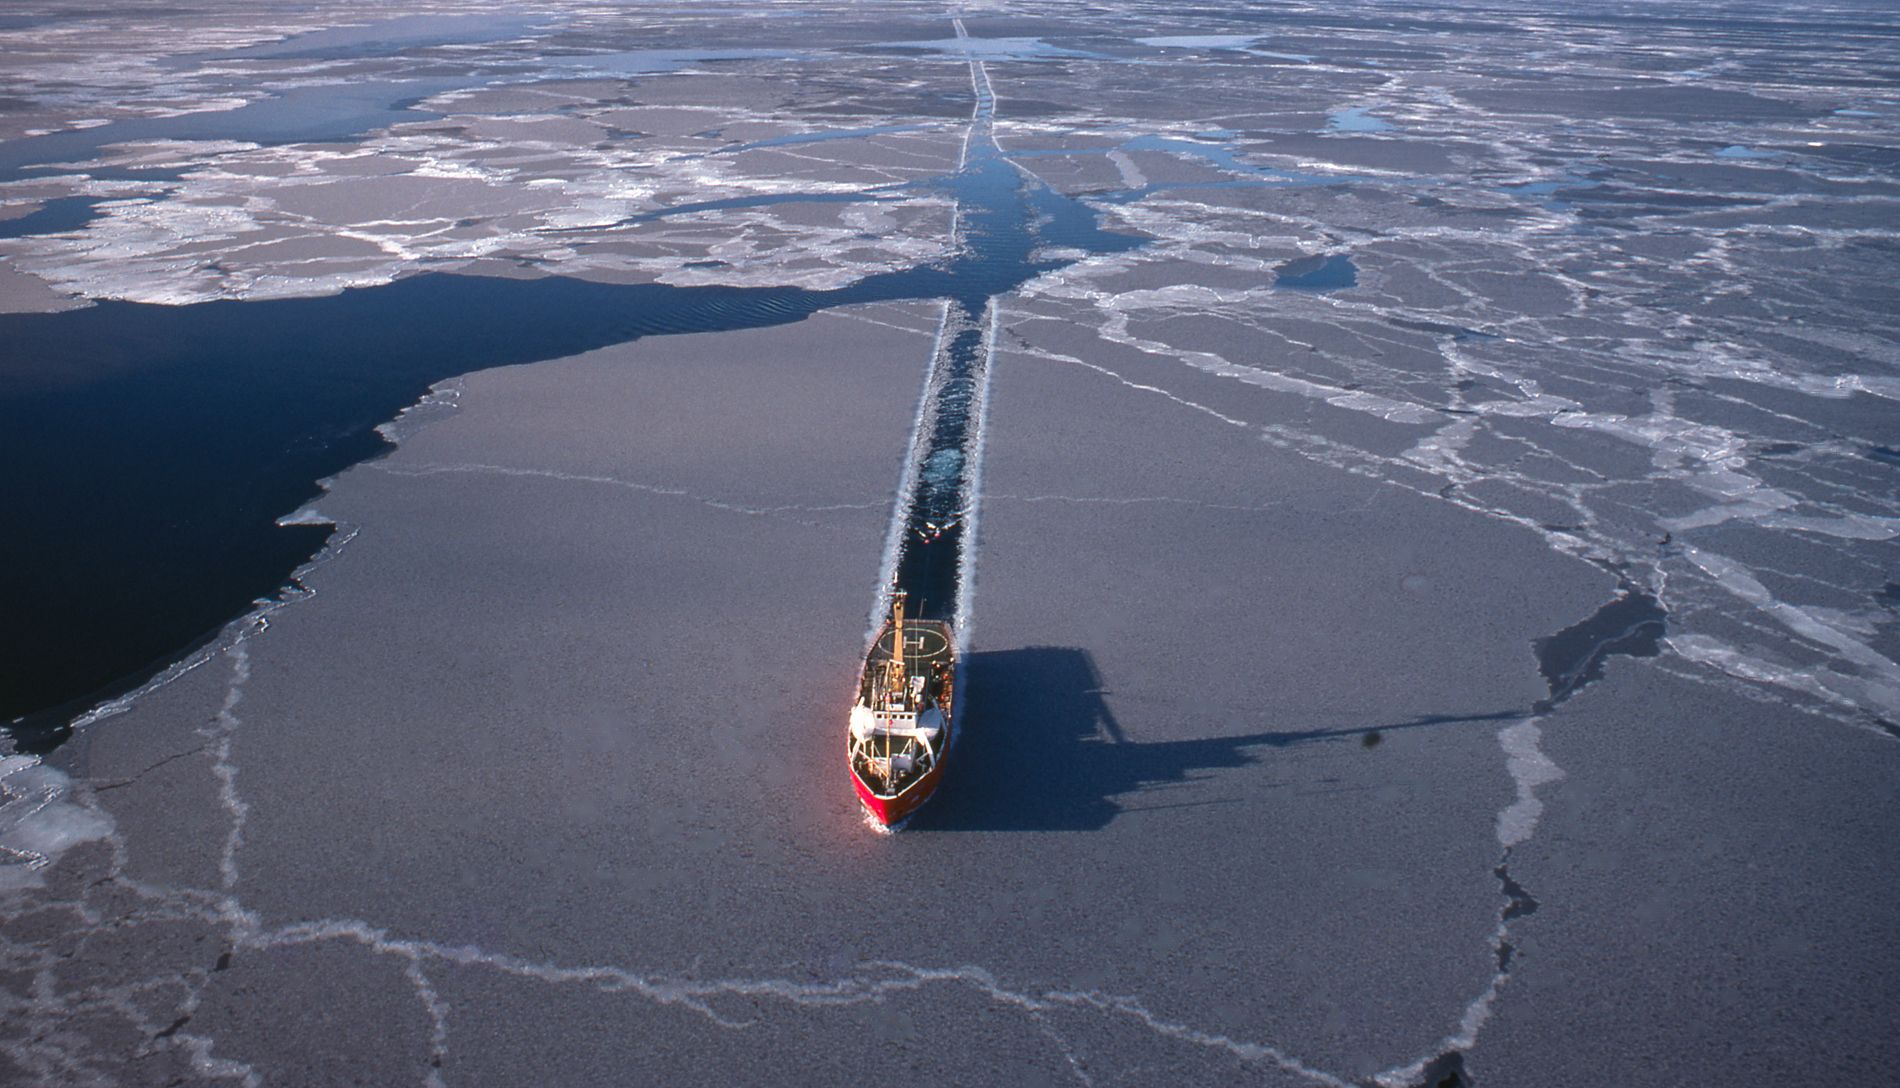 El deshielo del Ártico permitirá trazar nuevas rutas. Sin embargo, los daños ambientales serían irreparables. (Getty Images)